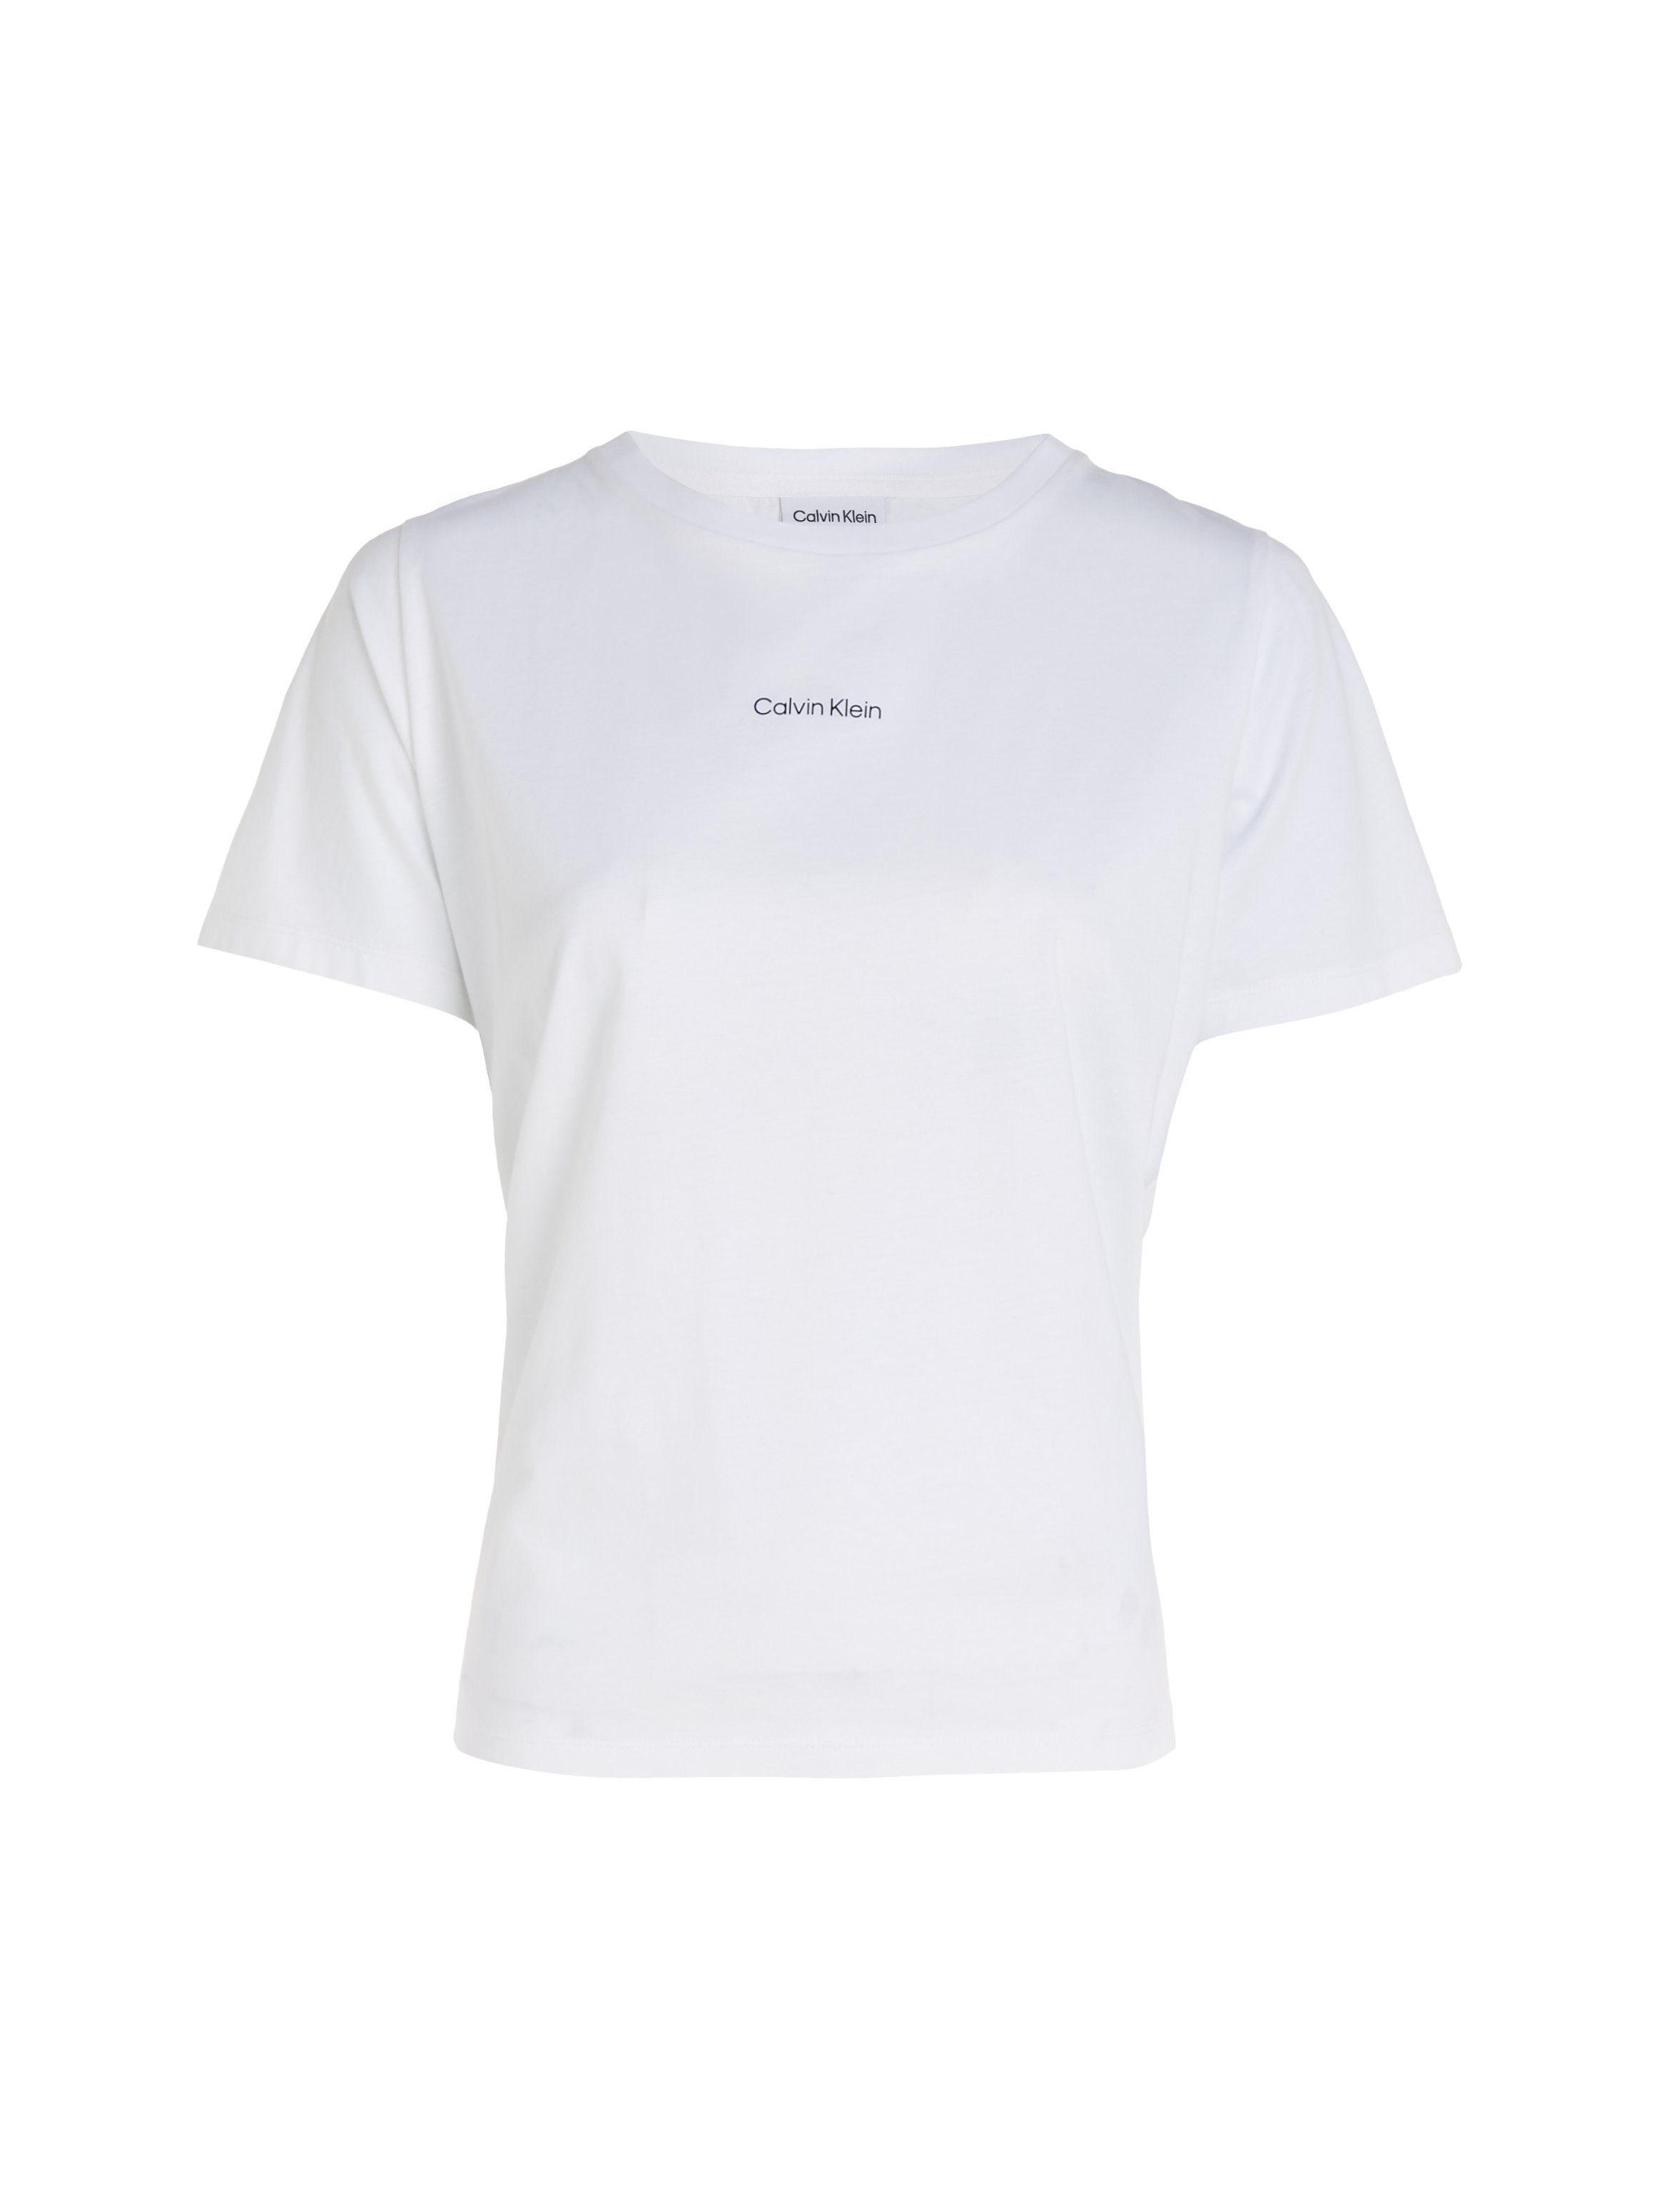 Baumwolle Klein T-SHIRT LOGO reiner Bright-White MICRO T-Shirt Calvin aus